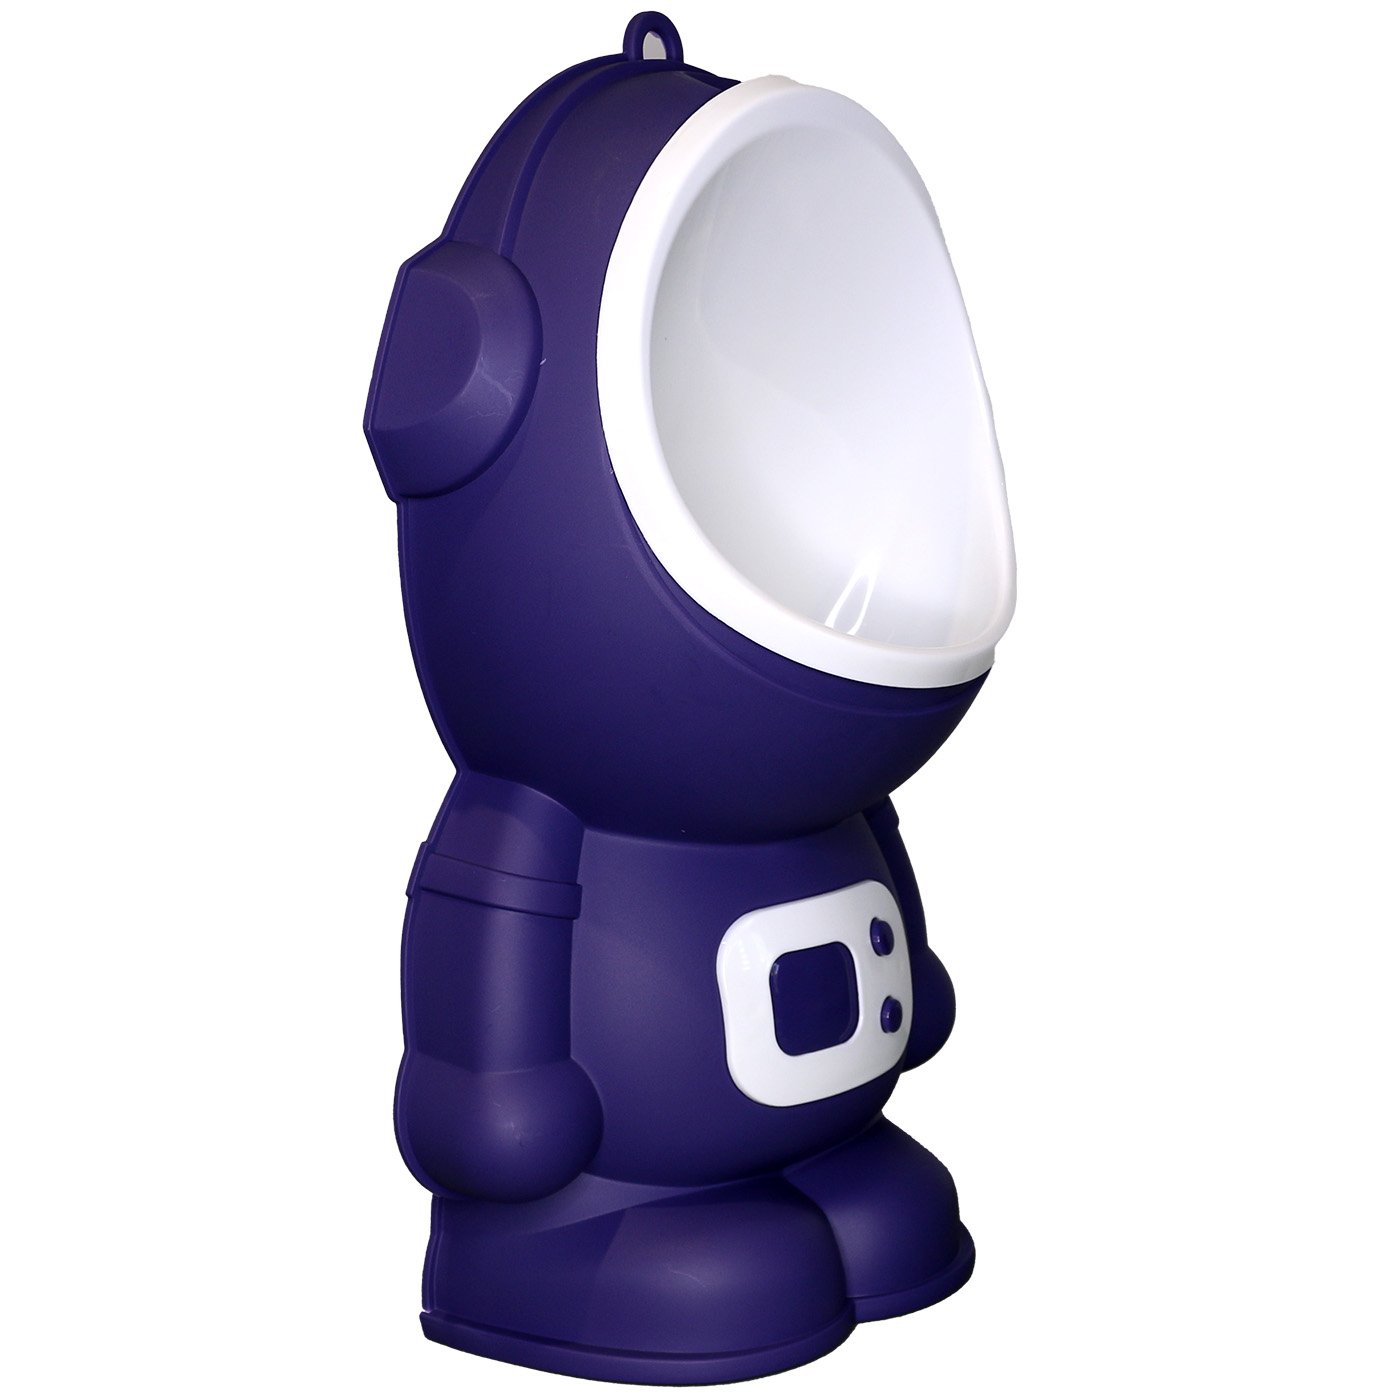 Mictório Infantil Portátil Penico para Meninos Modelo Astronauta Lorben Azul Escuro - 2